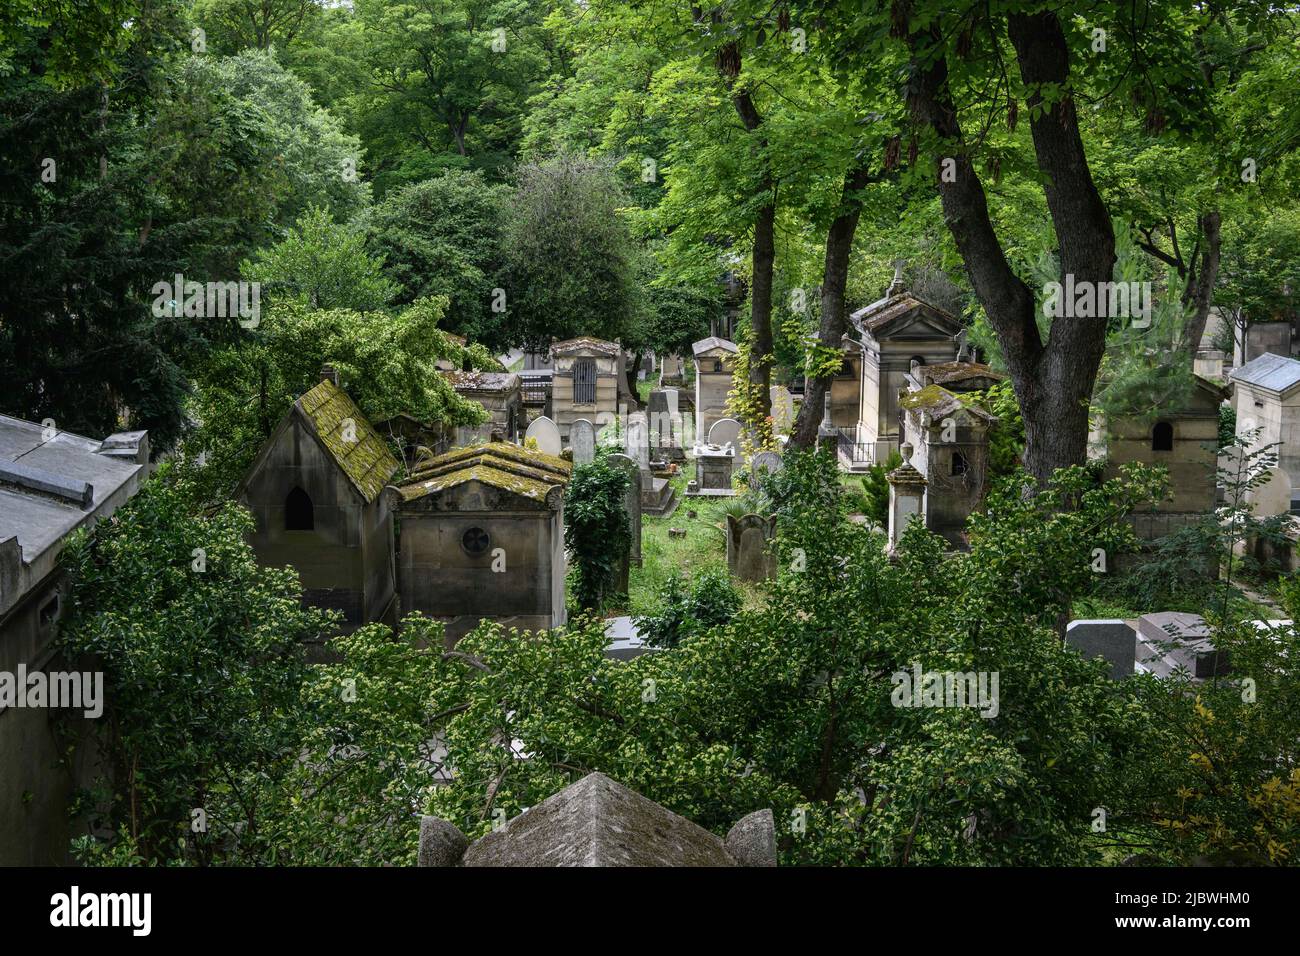 Francia, Parigi, 2021-07-07. Vista dall'alto di una vecchia parte del cimitero di Père Lachaise. Le tombe e i mausolei sono avvolti da una rigogliosa vegetazione. Foto Stock